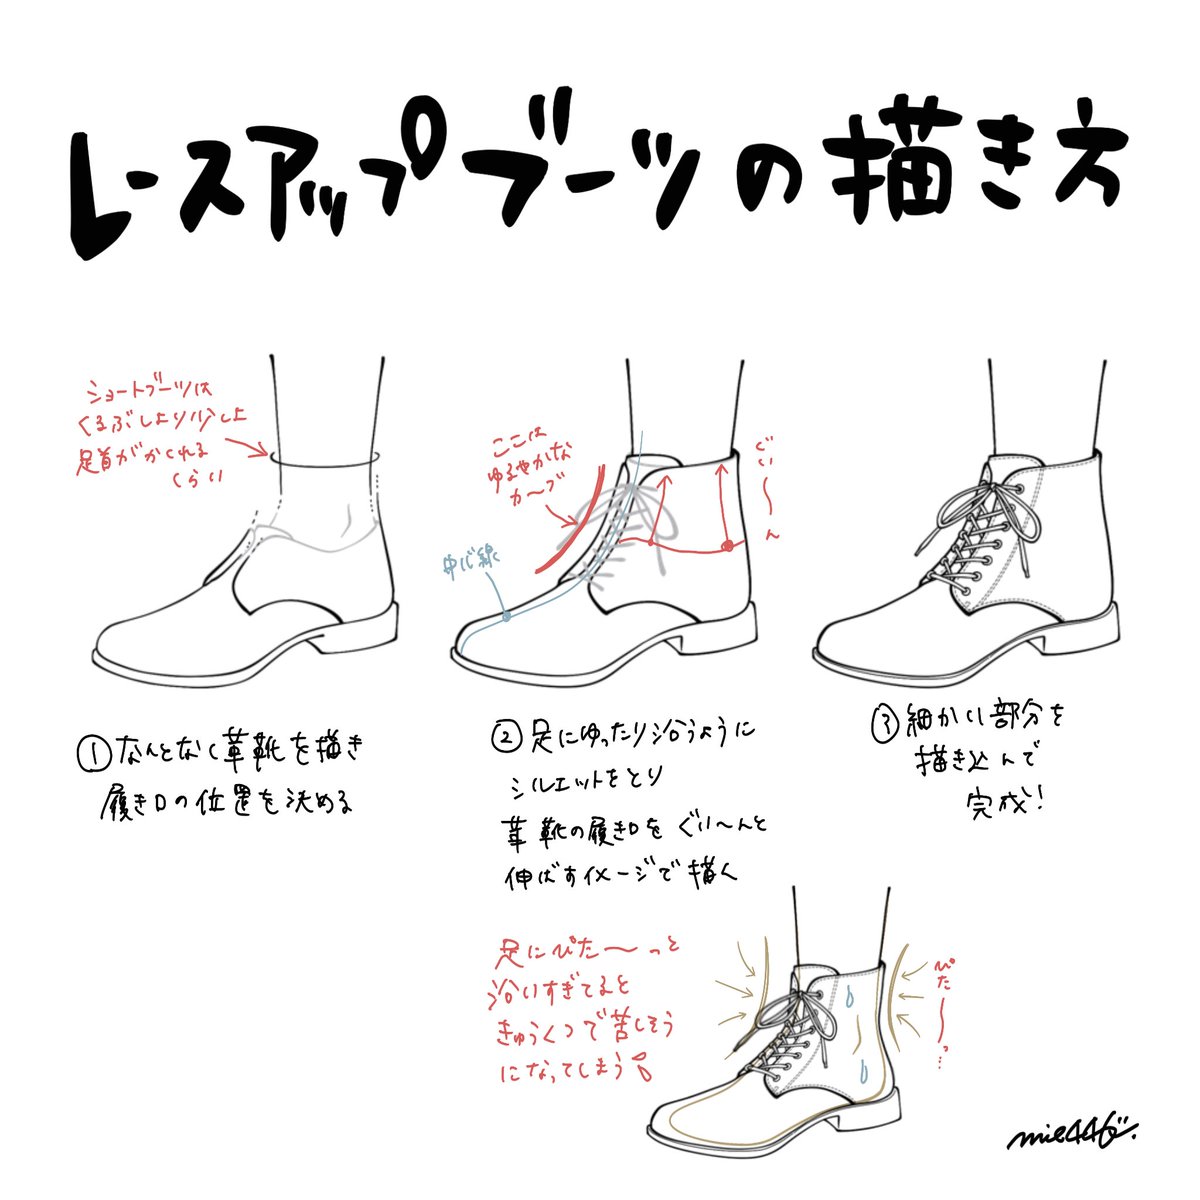 レースアップブーツの描き方〜
#靴の描き方tips 